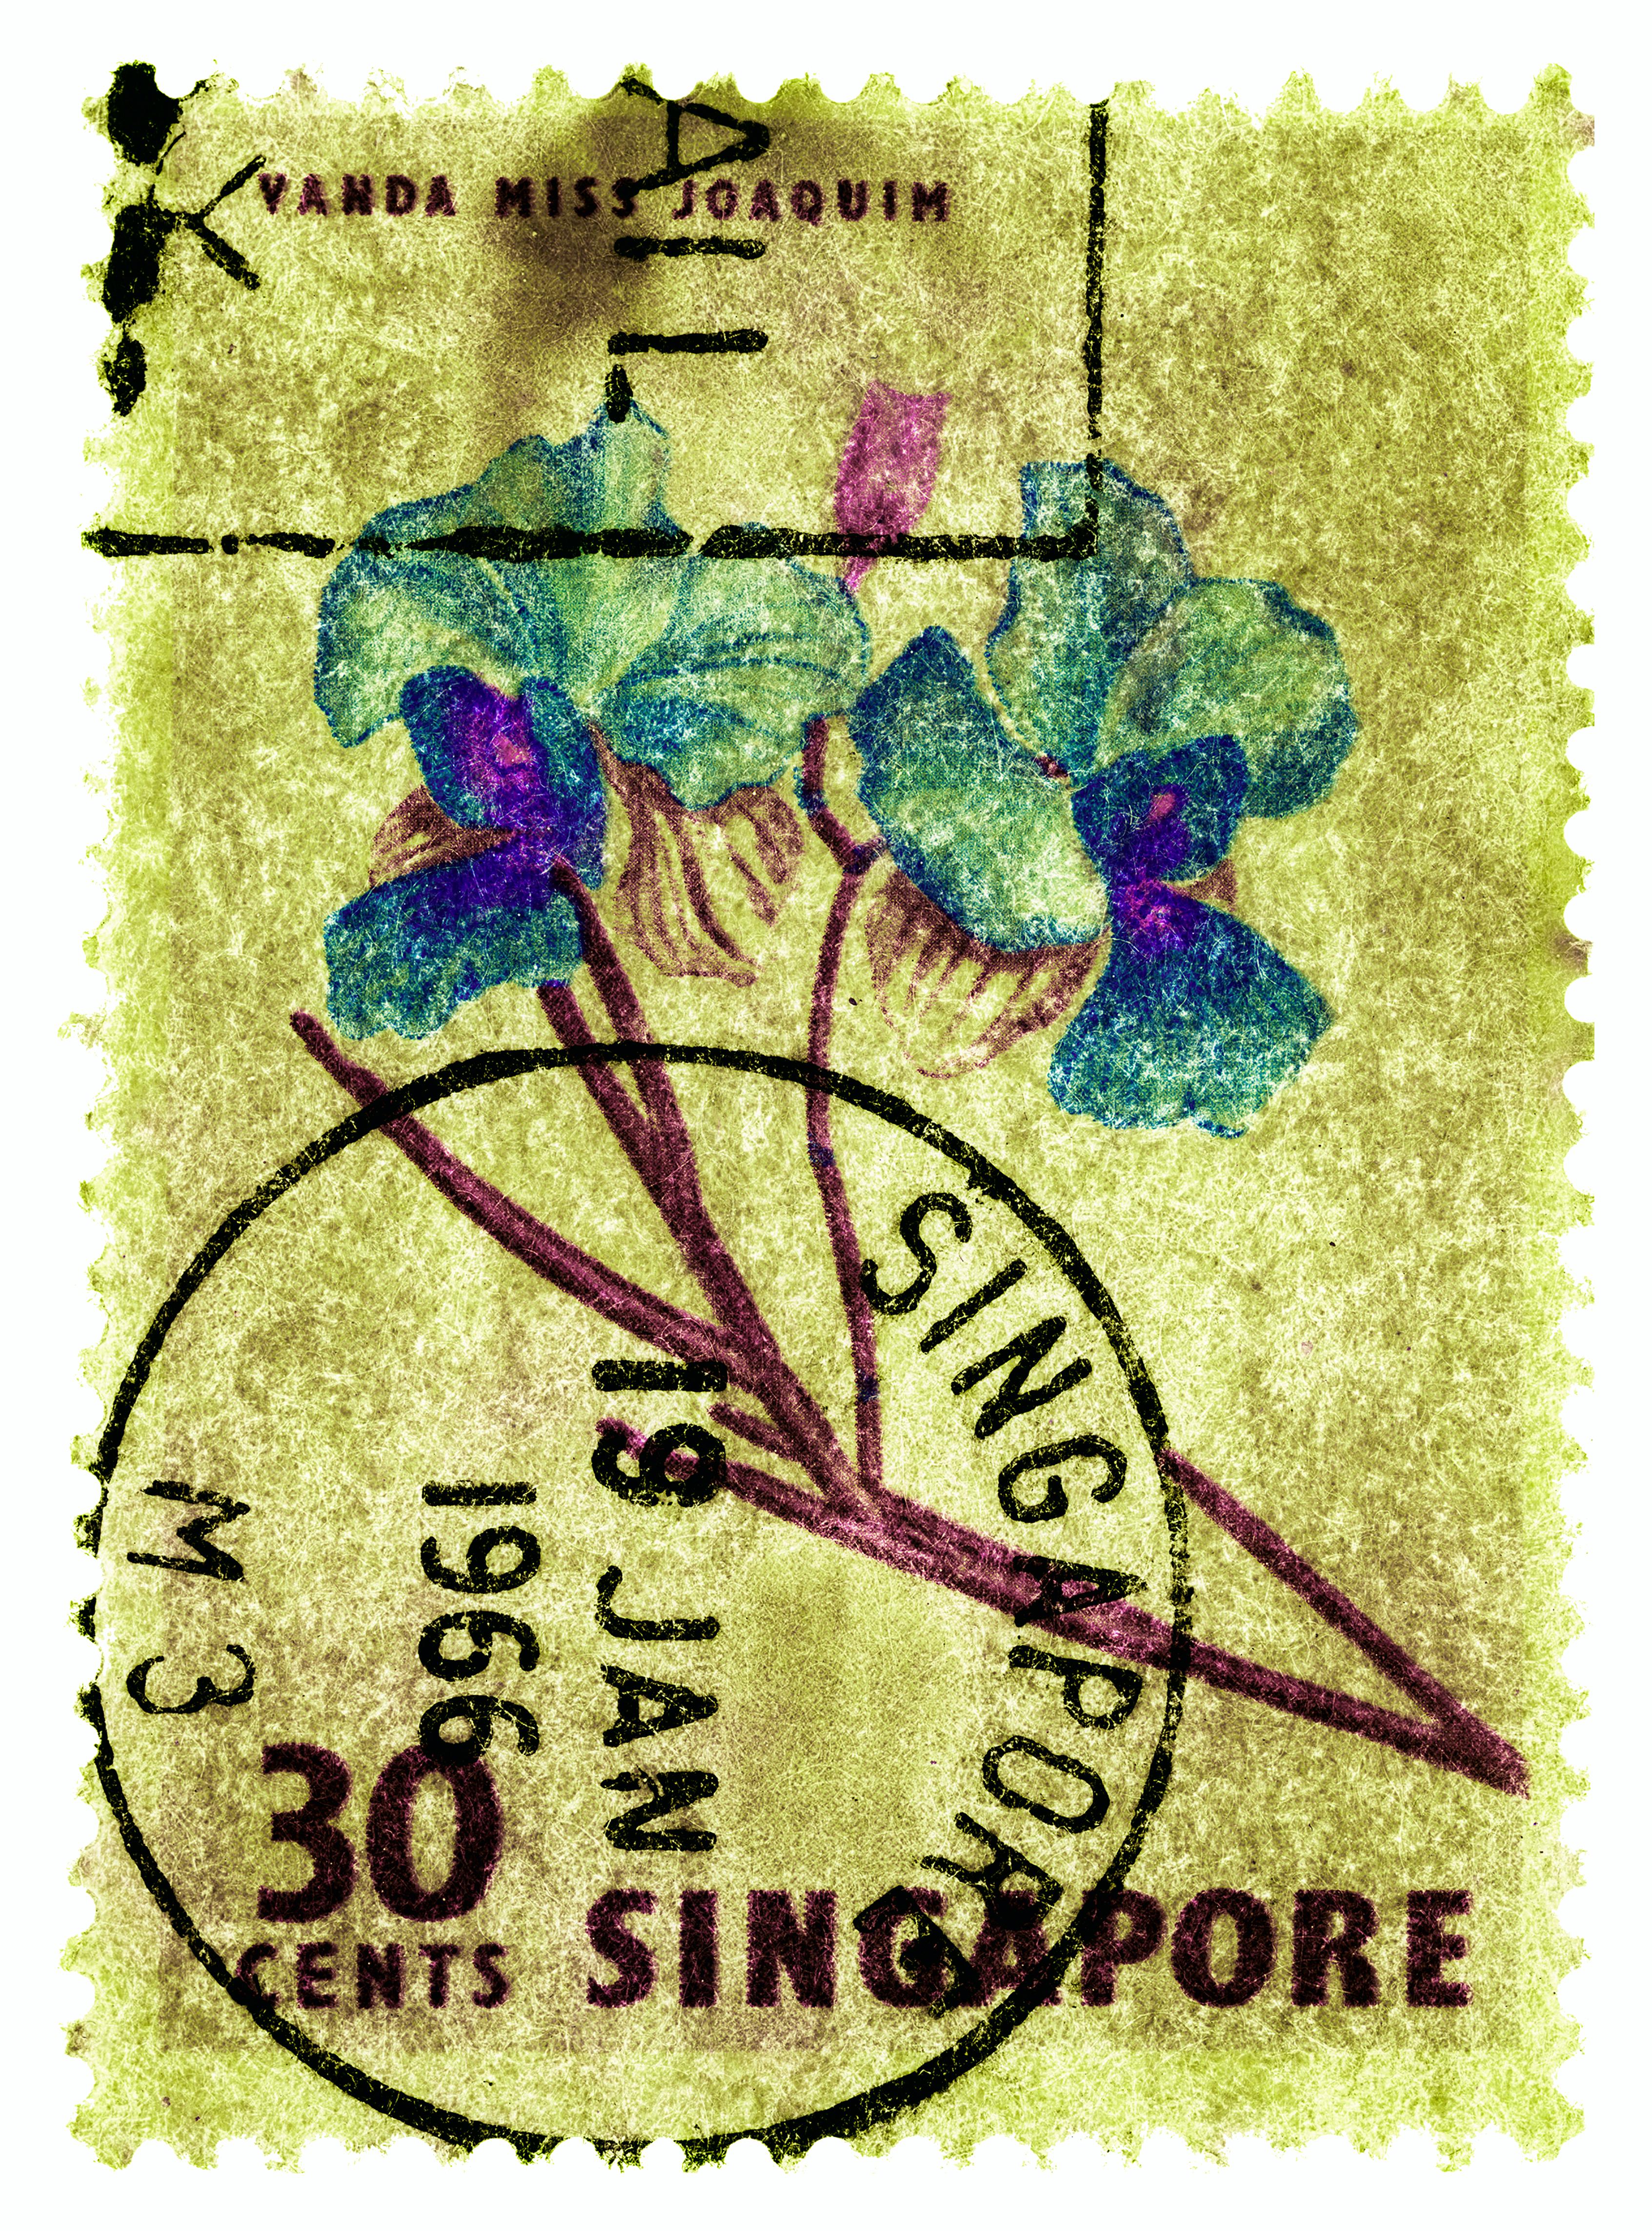 Collection de timbres de Singapour, 30c Singapour Quatre - Photo couleur florale - Gris Print par Heidler & Heeps